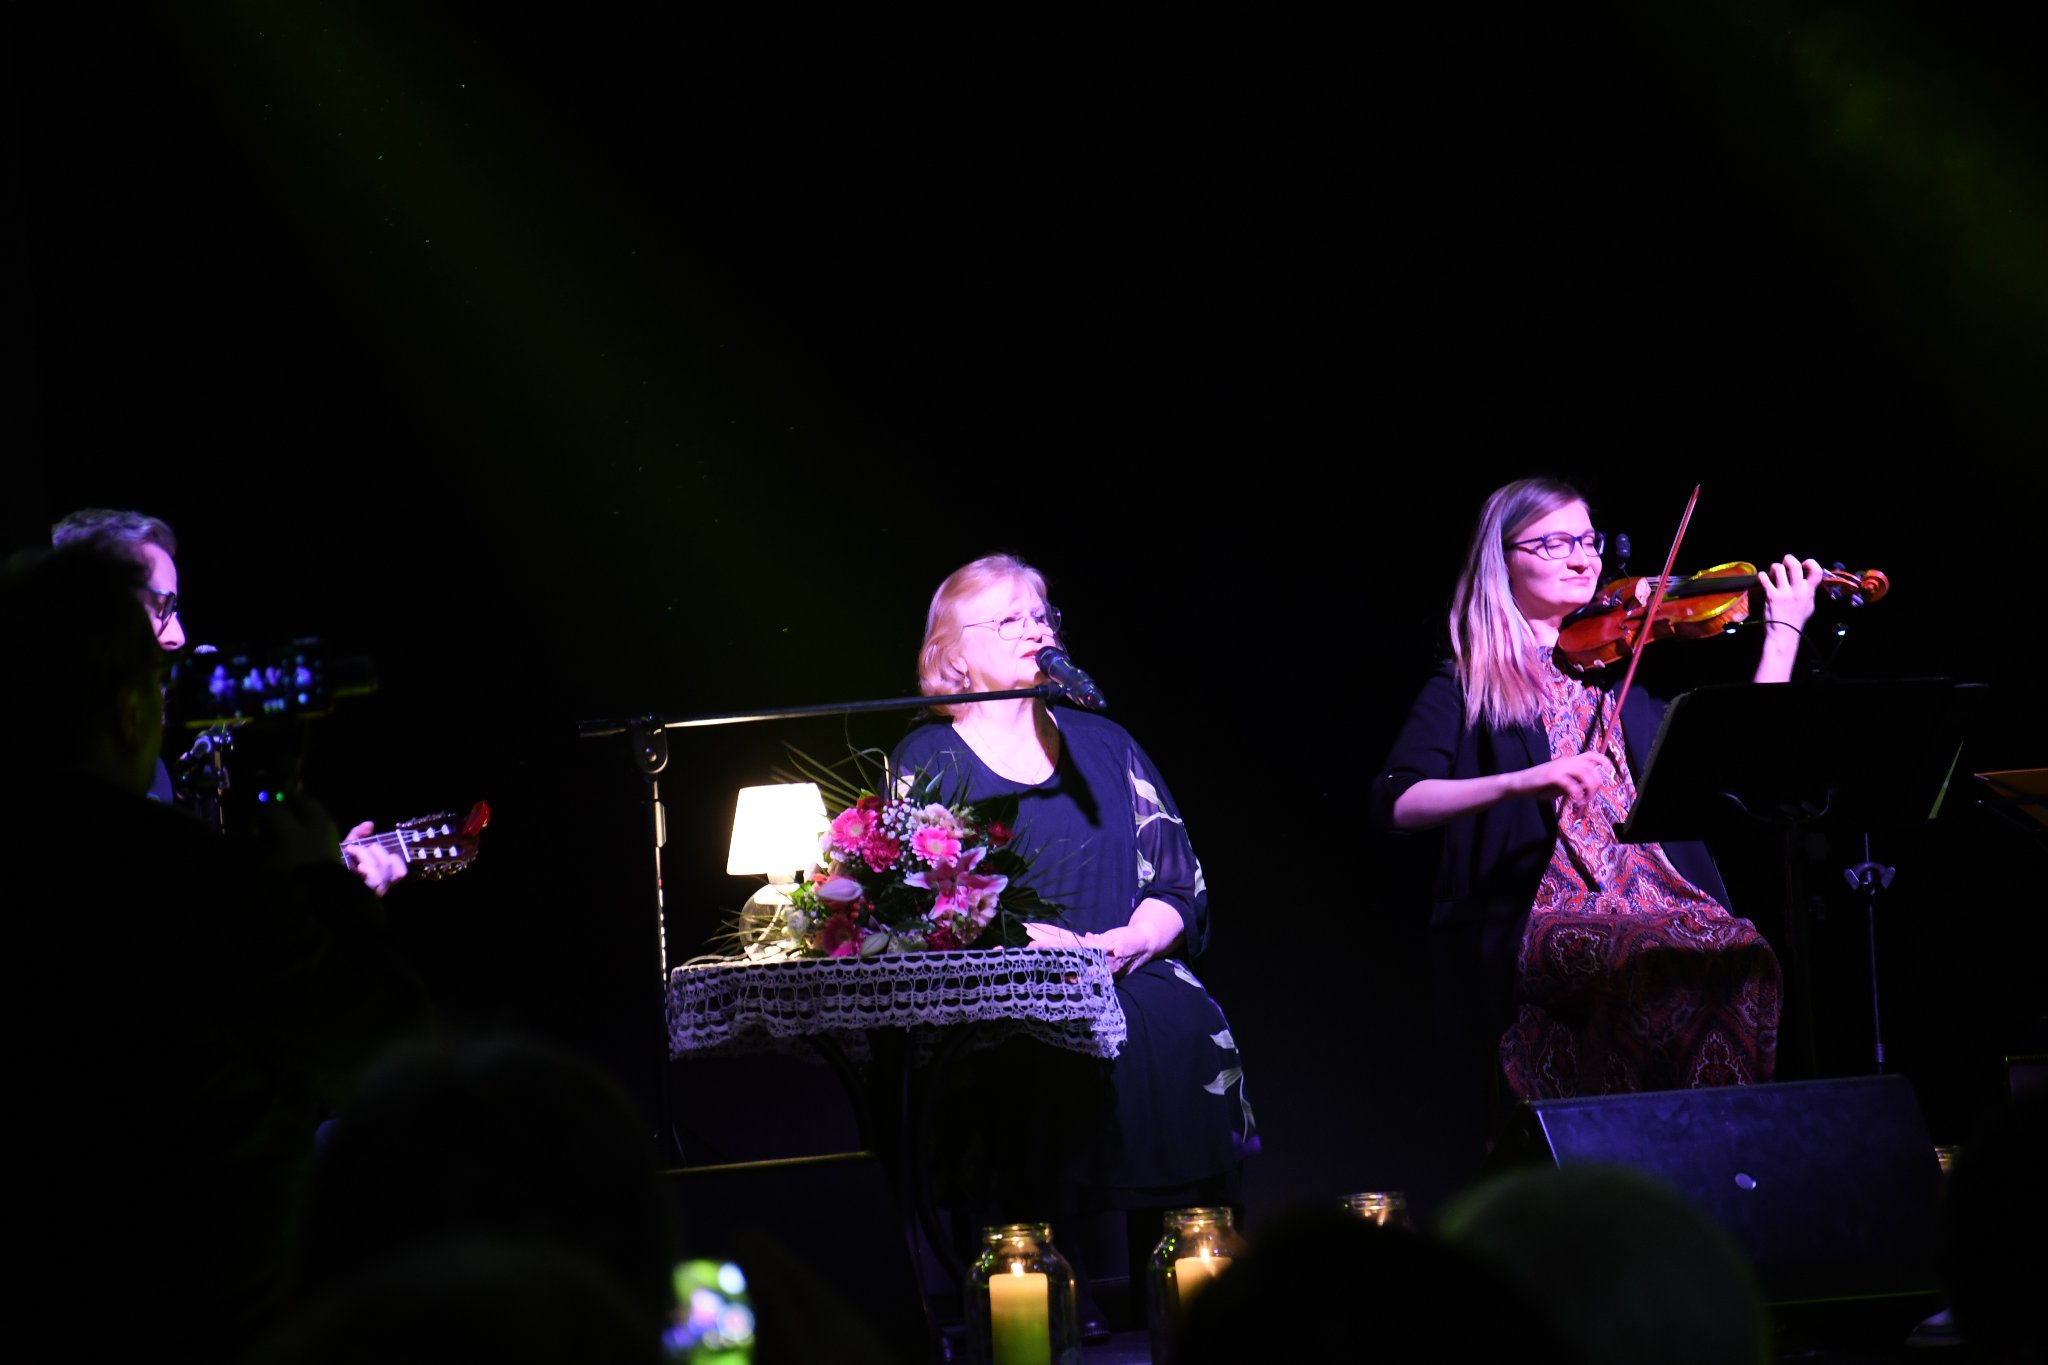 Trzy osoby siedzące na scenie, Stanisława Celińska oraz dwoje muzyków, kobieta grająca na skrzypcach i mężczyzna grający na gitarze. Przy Stanisławie stolik z lampką. Zdjęcie zrobione w trakcie koncertu.